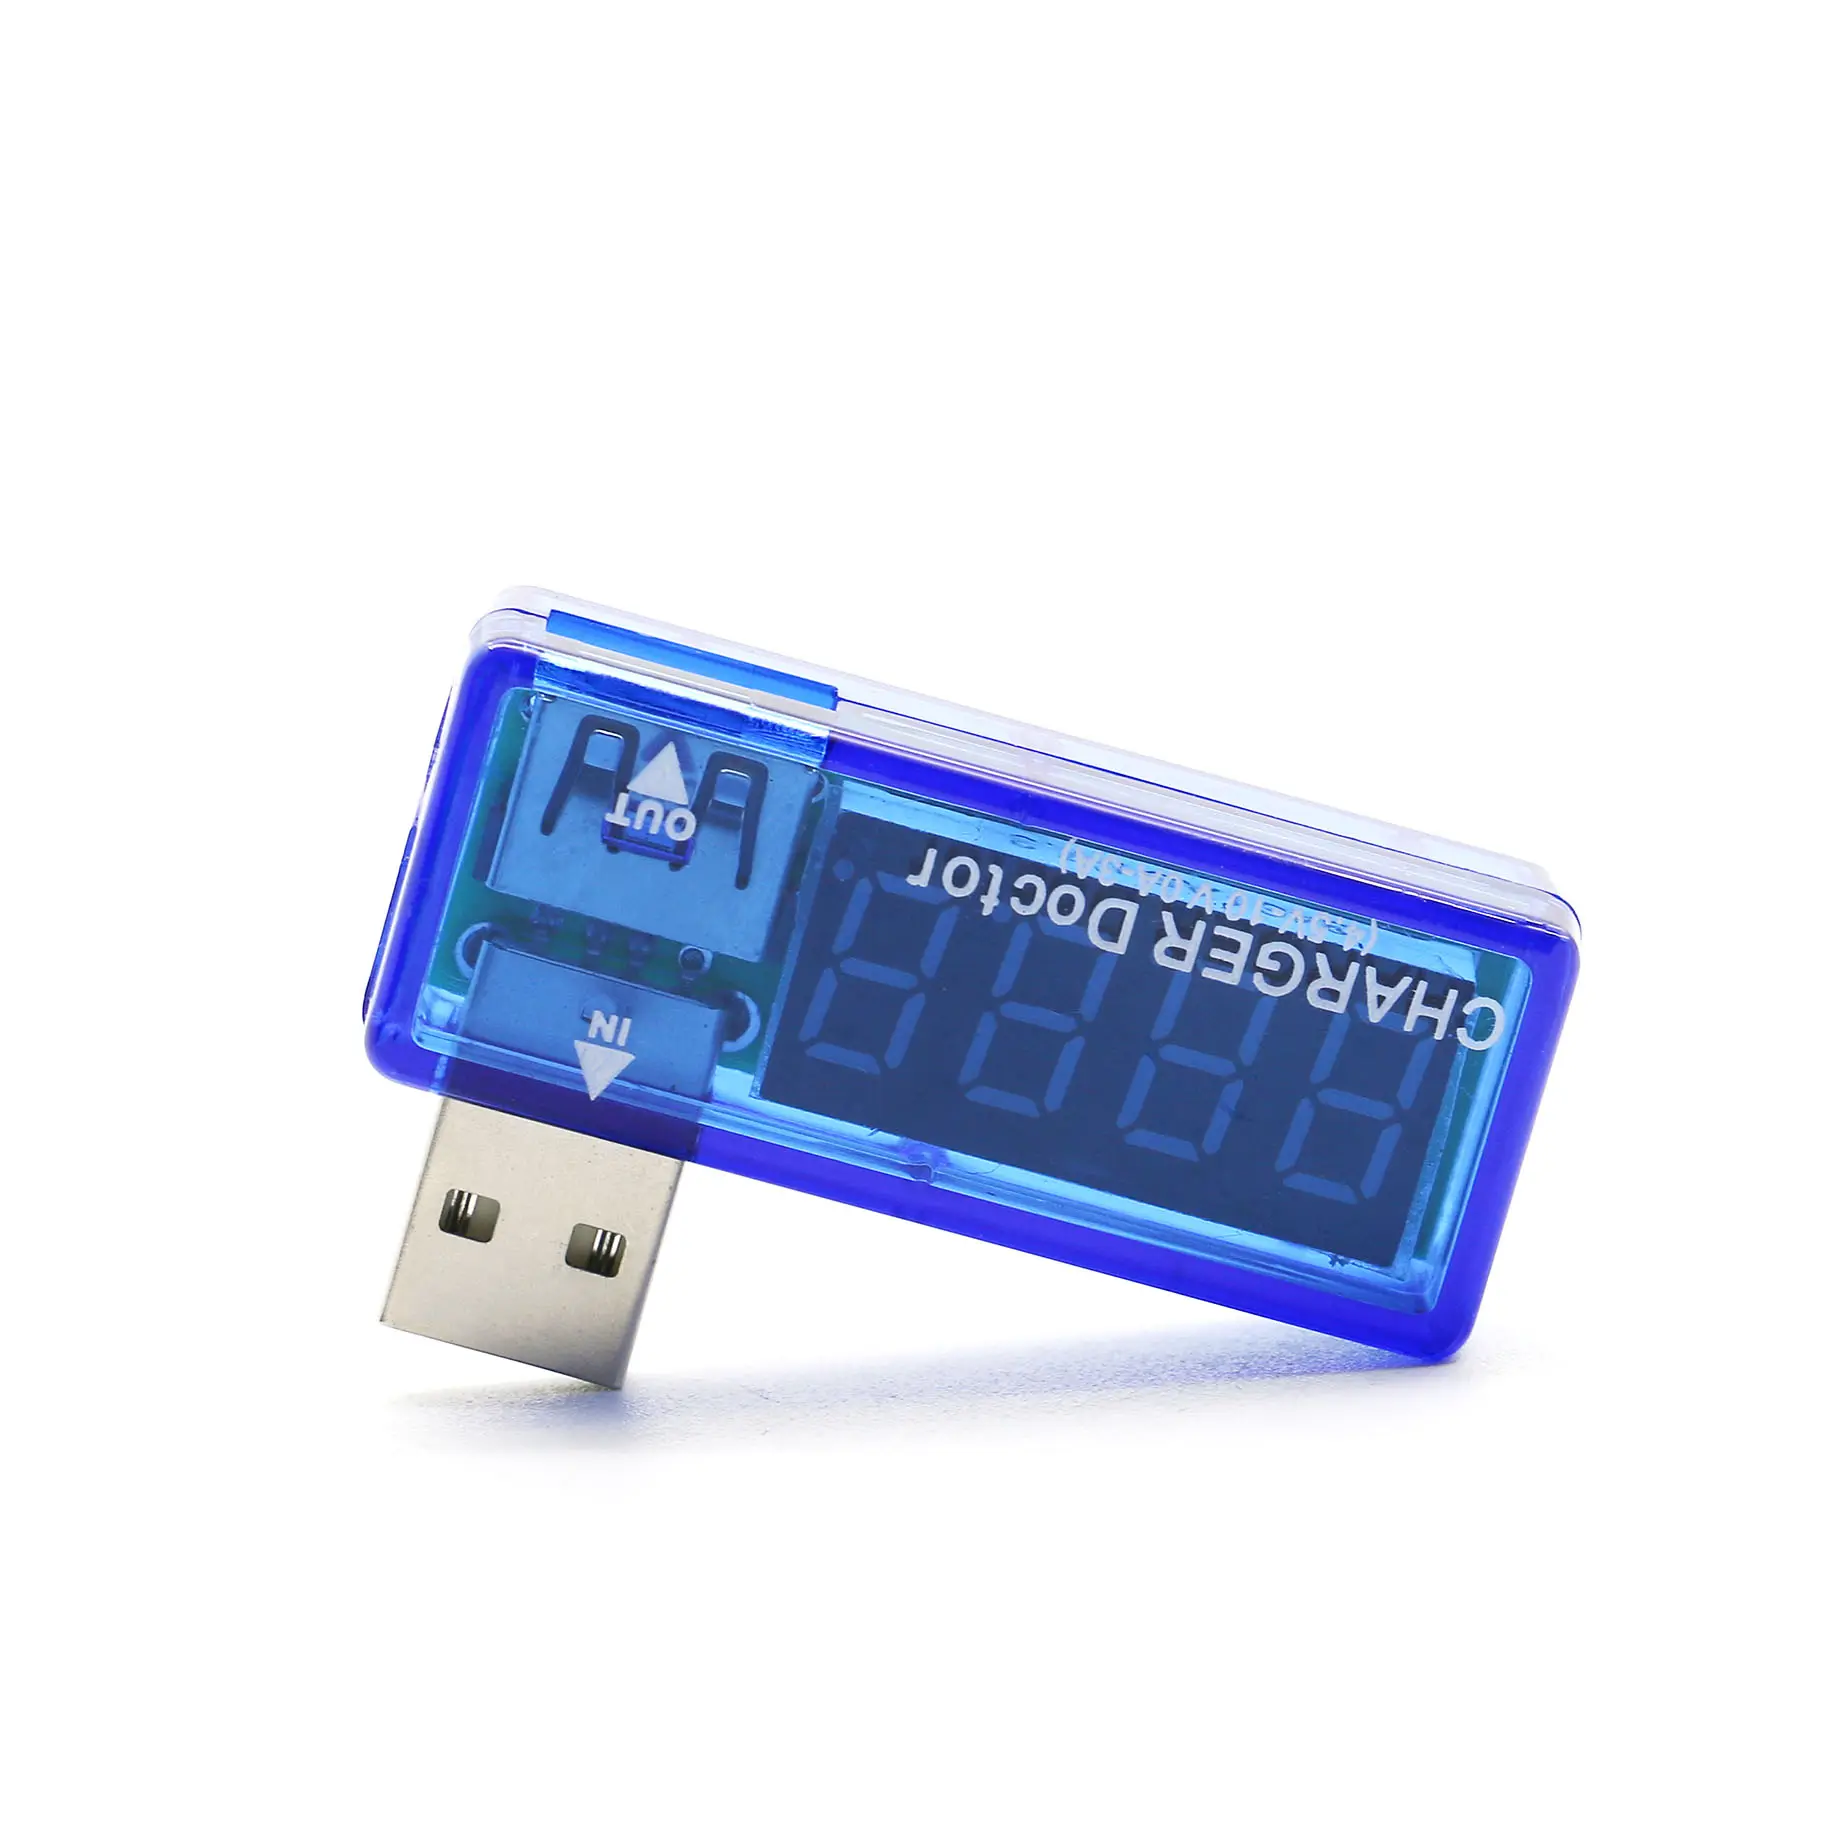 فاحص طاقة الهاتف المحمول USB 3.0 مقياس طاقة USB ذو منحى تيار أزرق جهاز اختبار الجهد الكهربائي مقياس متعدد